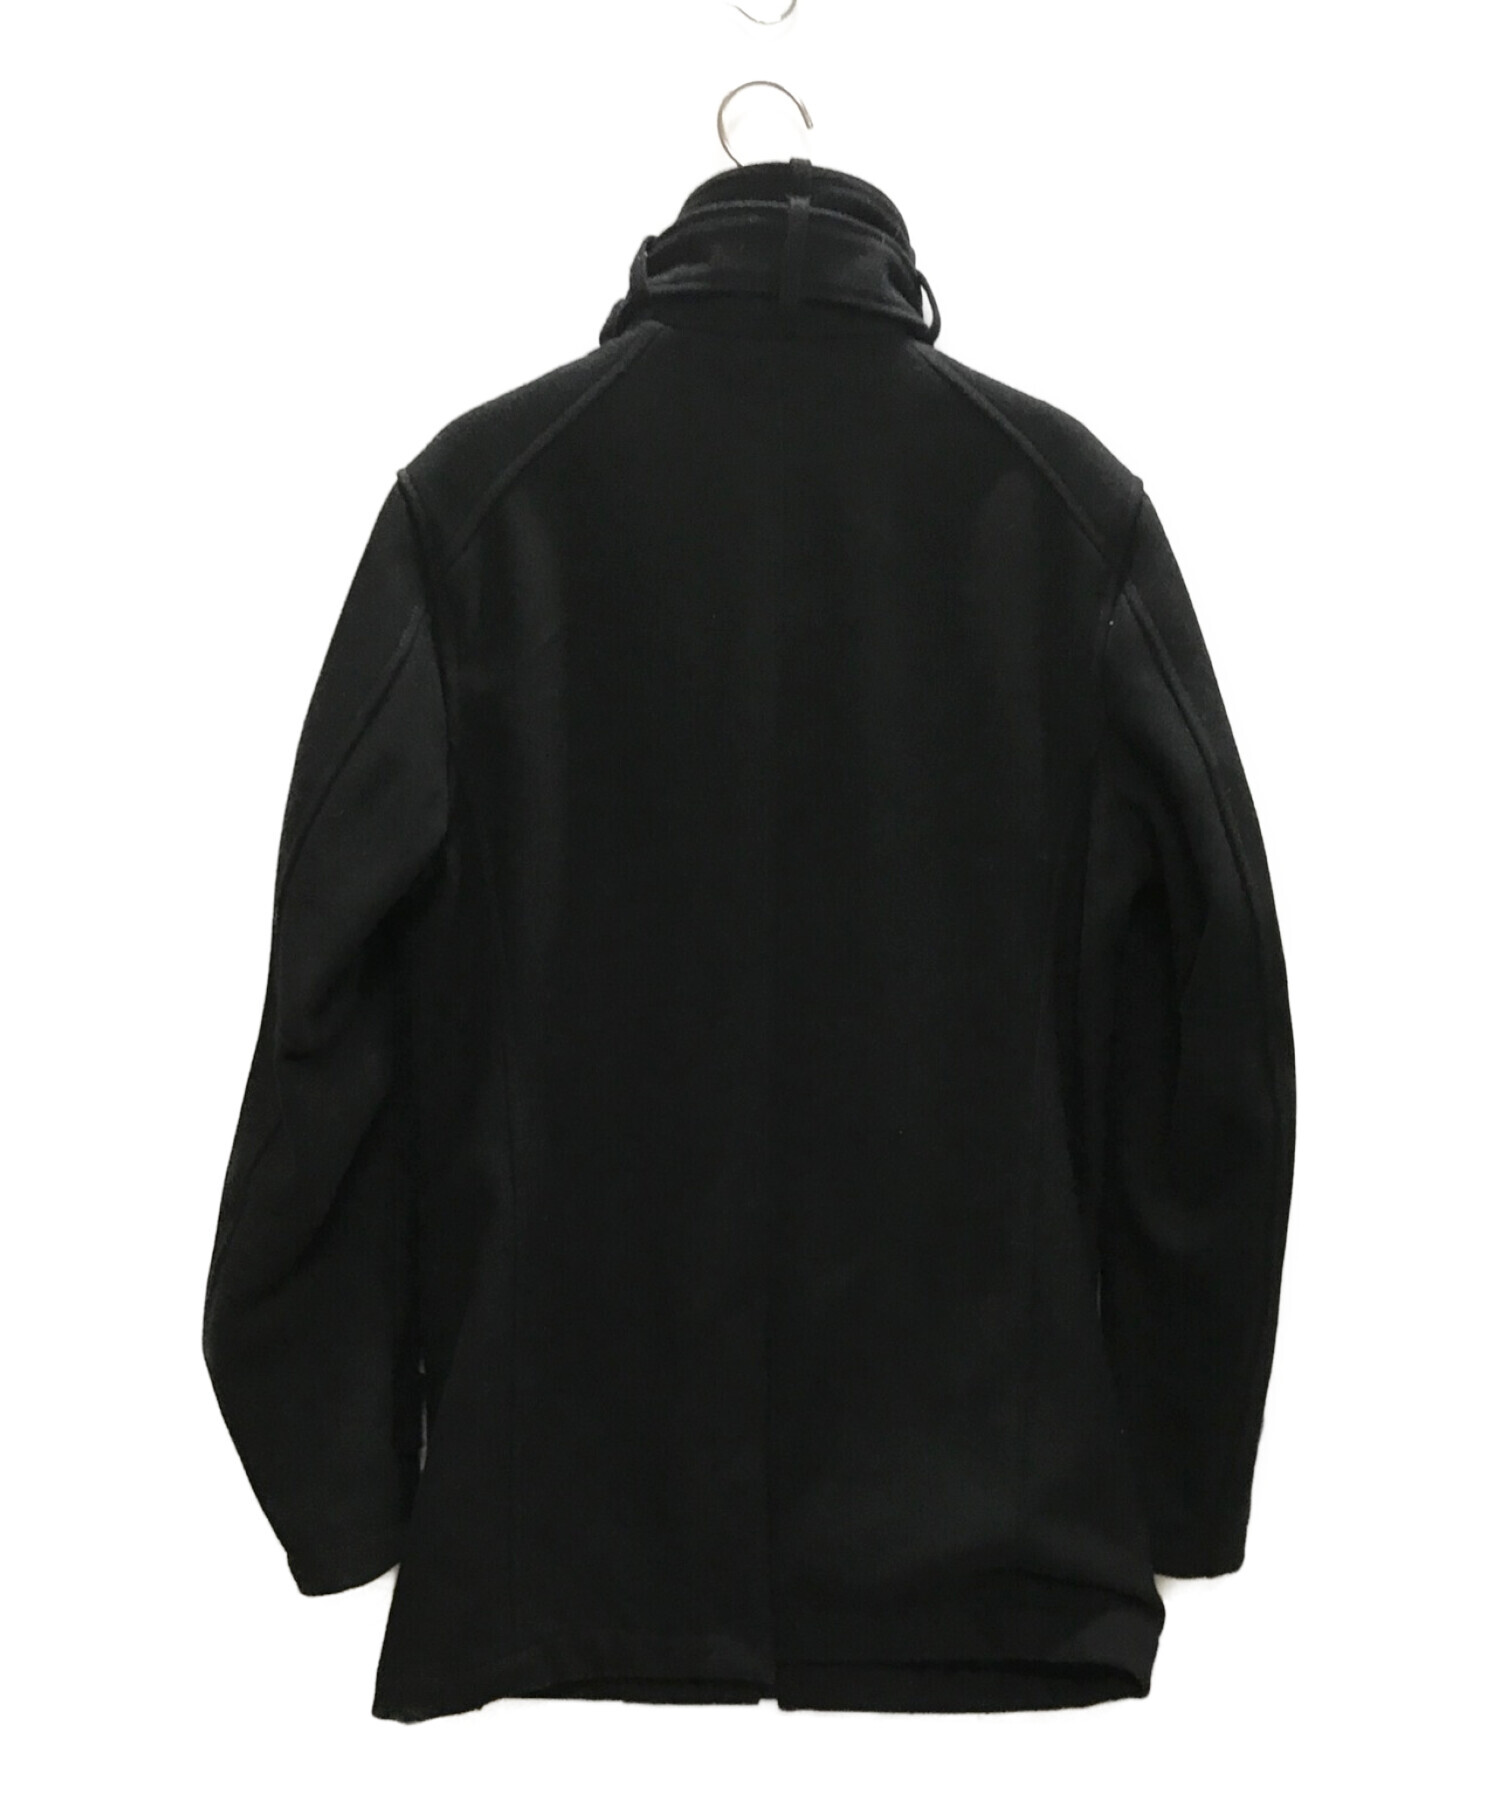 G-STAR RAW (ジースターロゥ) ベルト付き スタンドカラー ウールコート ブラック サイズ:Ｓ